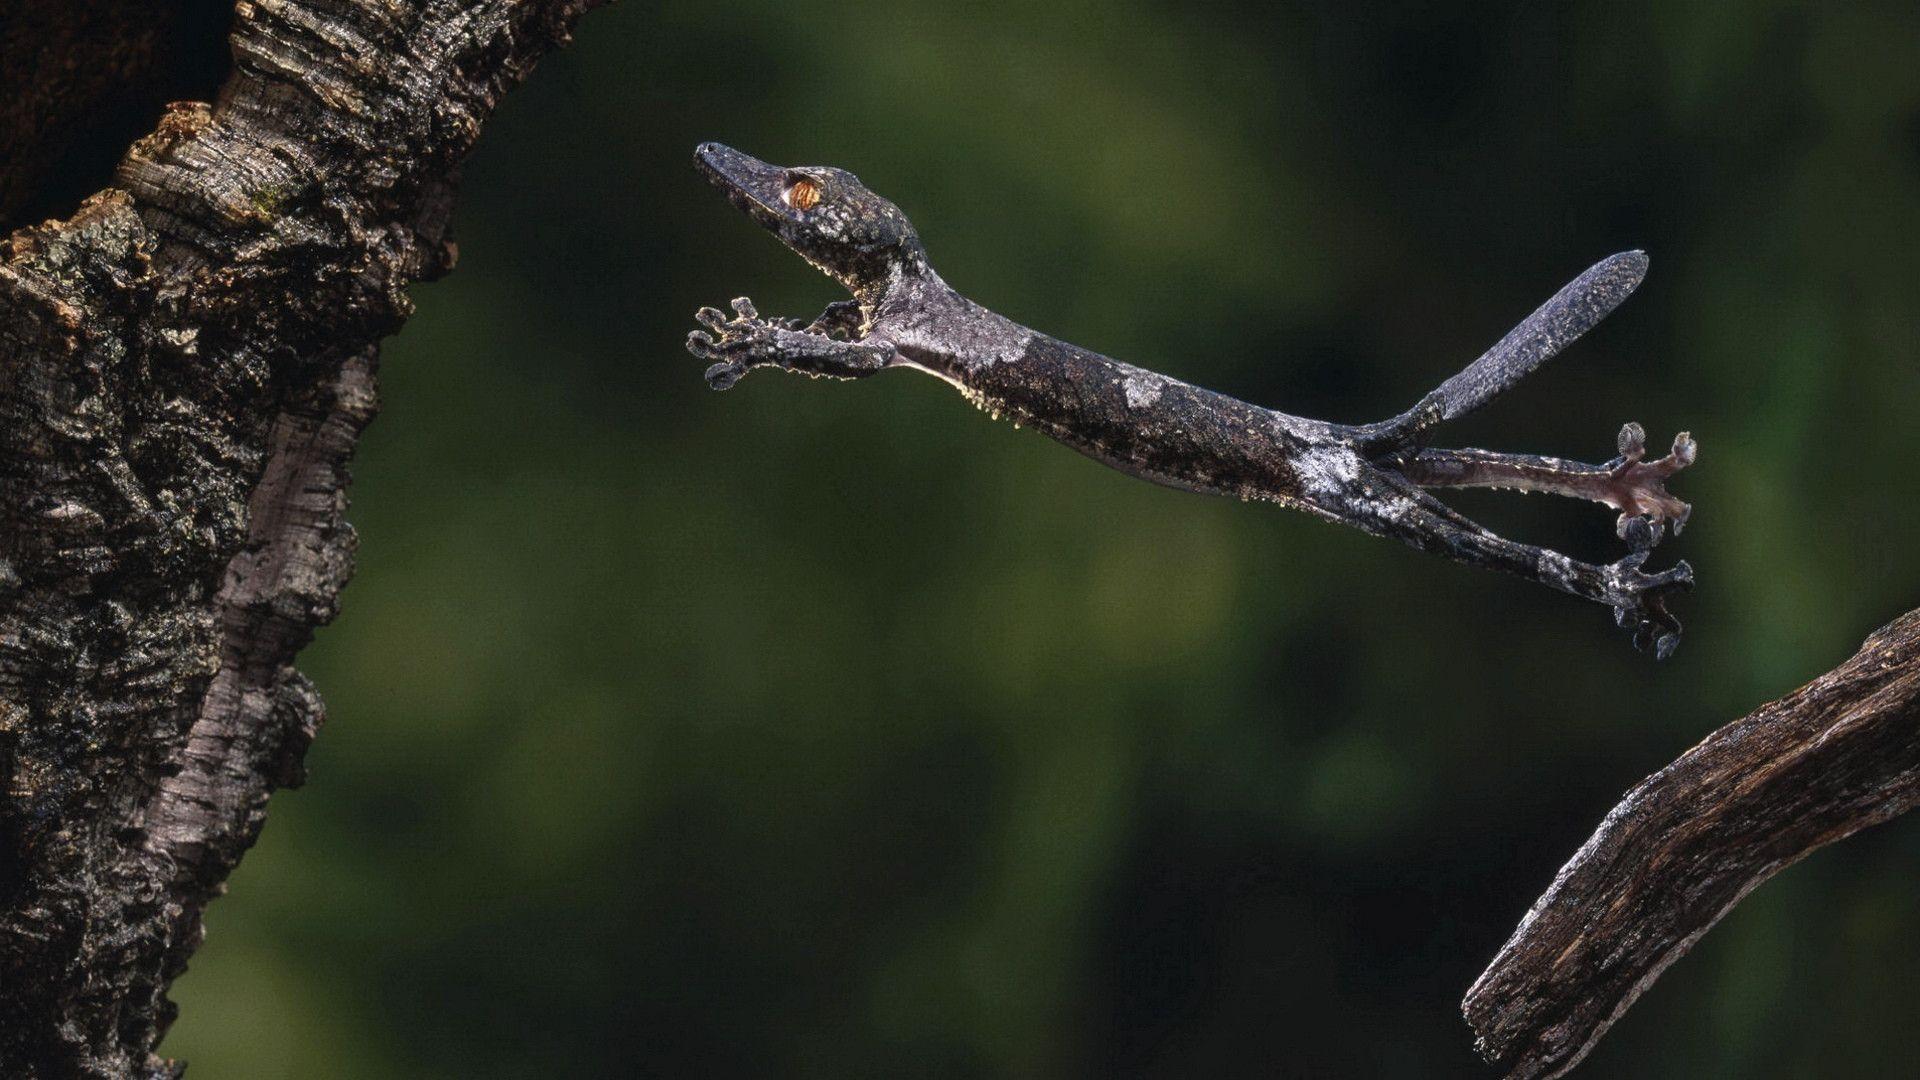 Gecko Lizard Jumping on a Tree Branch widescreen wallpaper. Wide